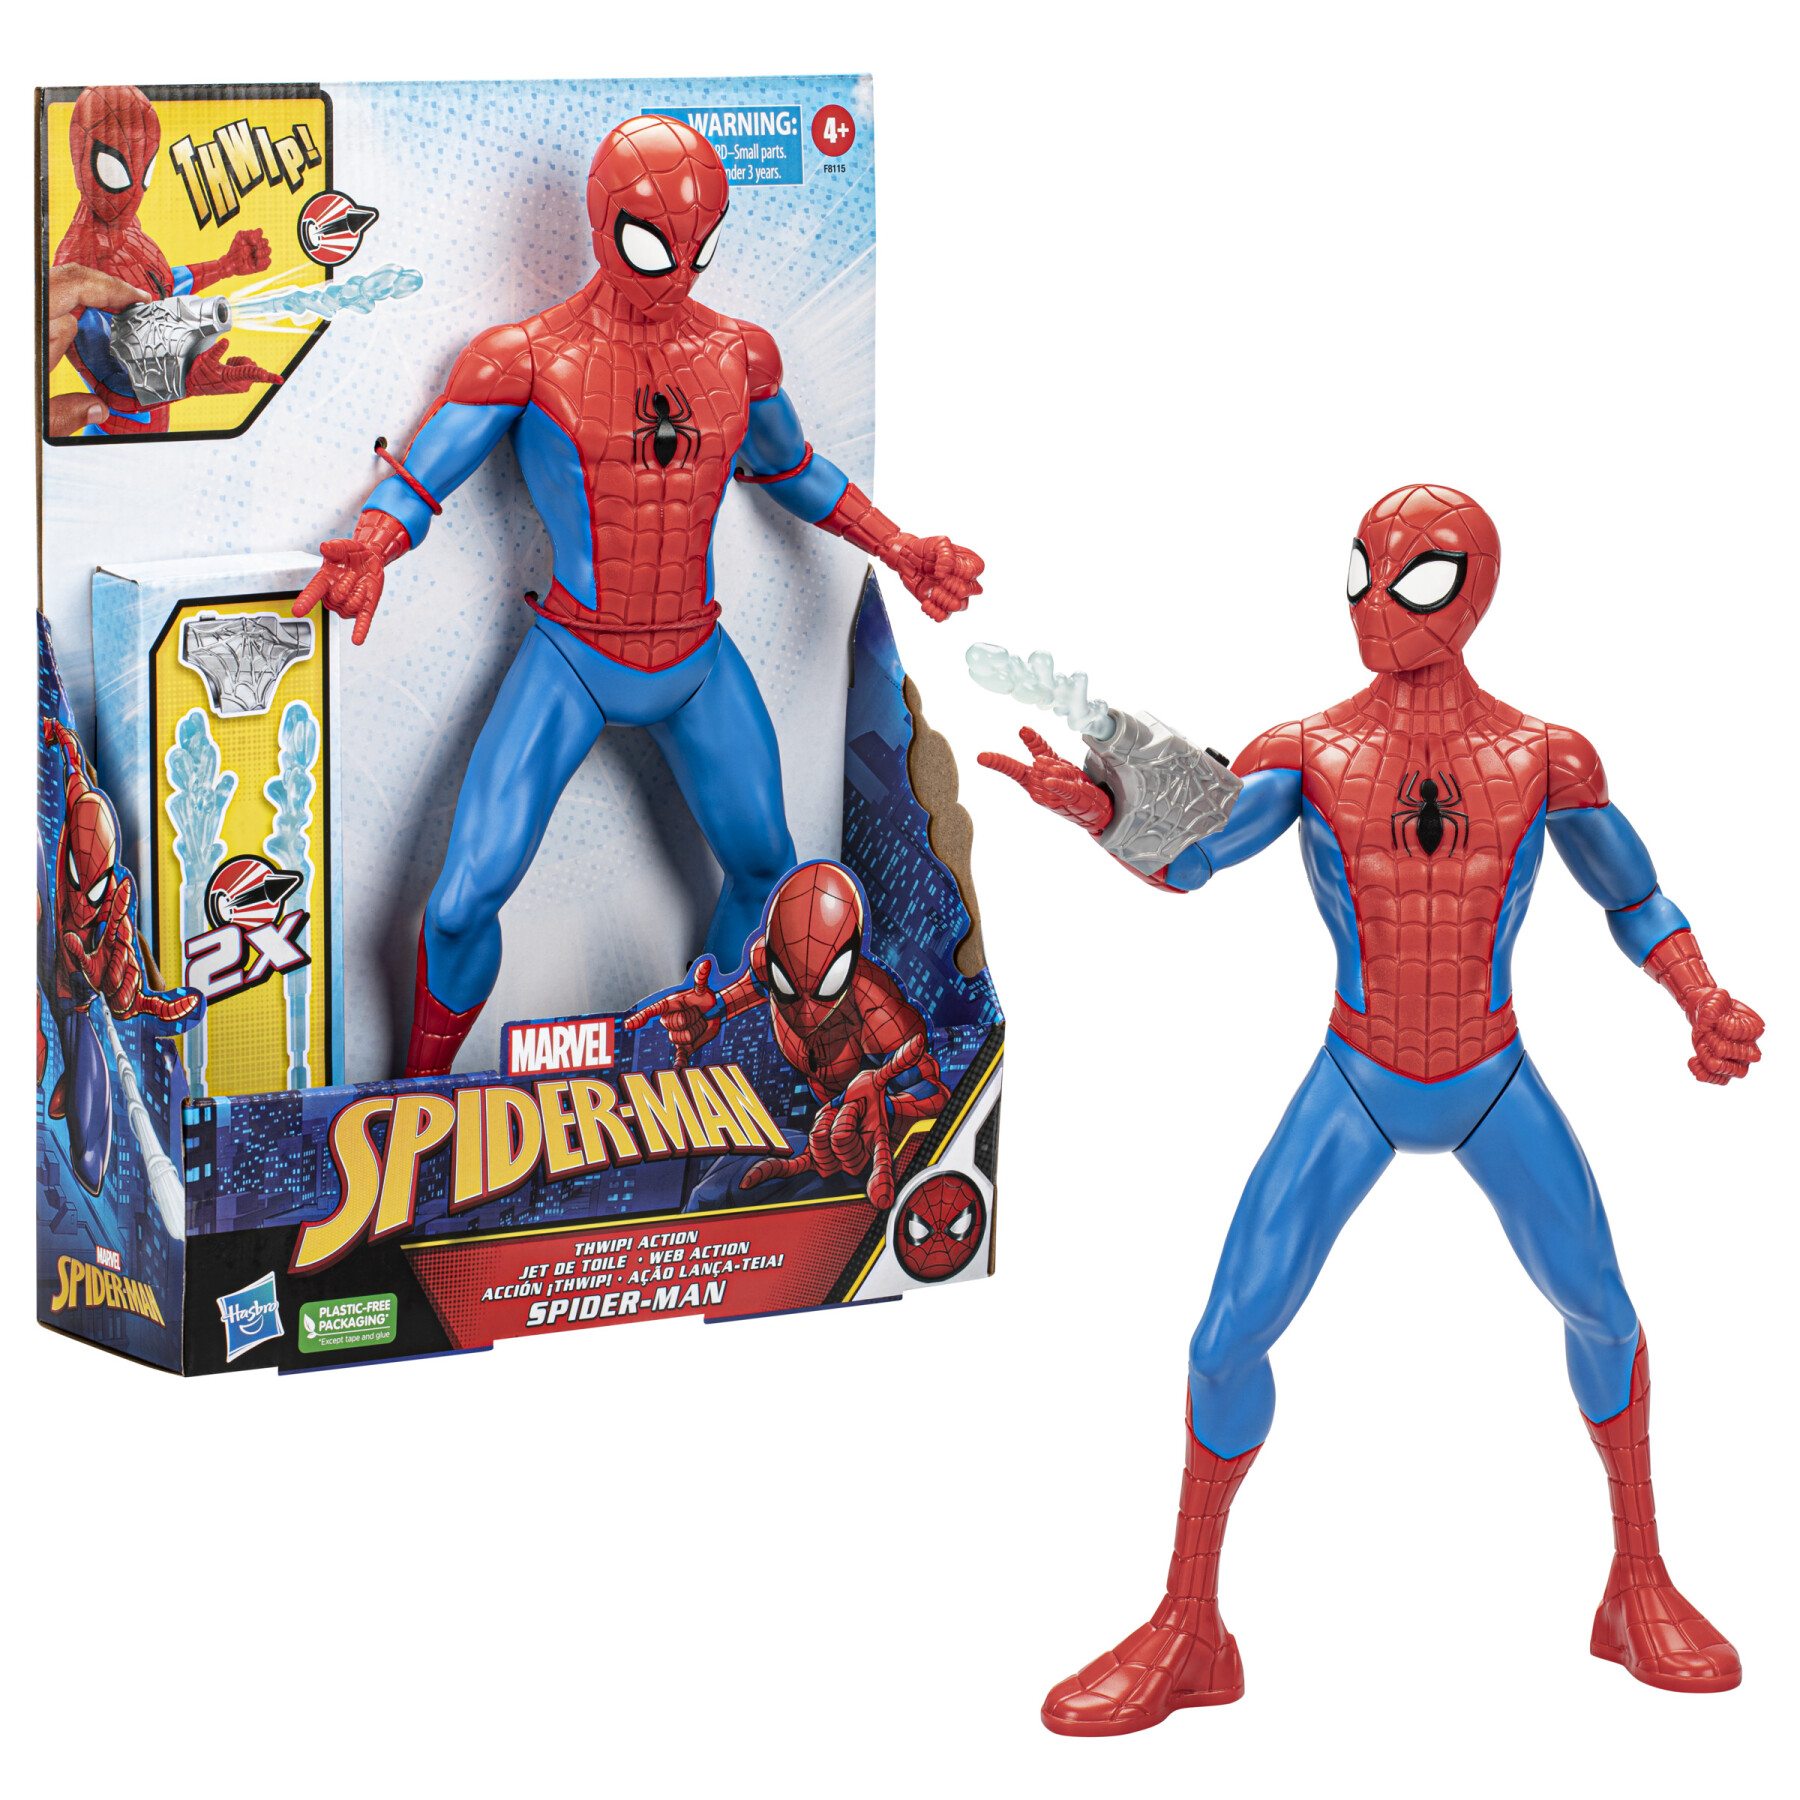 Hasbro marvel, spider-man thwip, action figure in scala da 33 cm, giocattoli di supereroi per bambini e bambine, dai 5 anni in su, accessori blaster lanciaragnatela inclusi - Spiderman